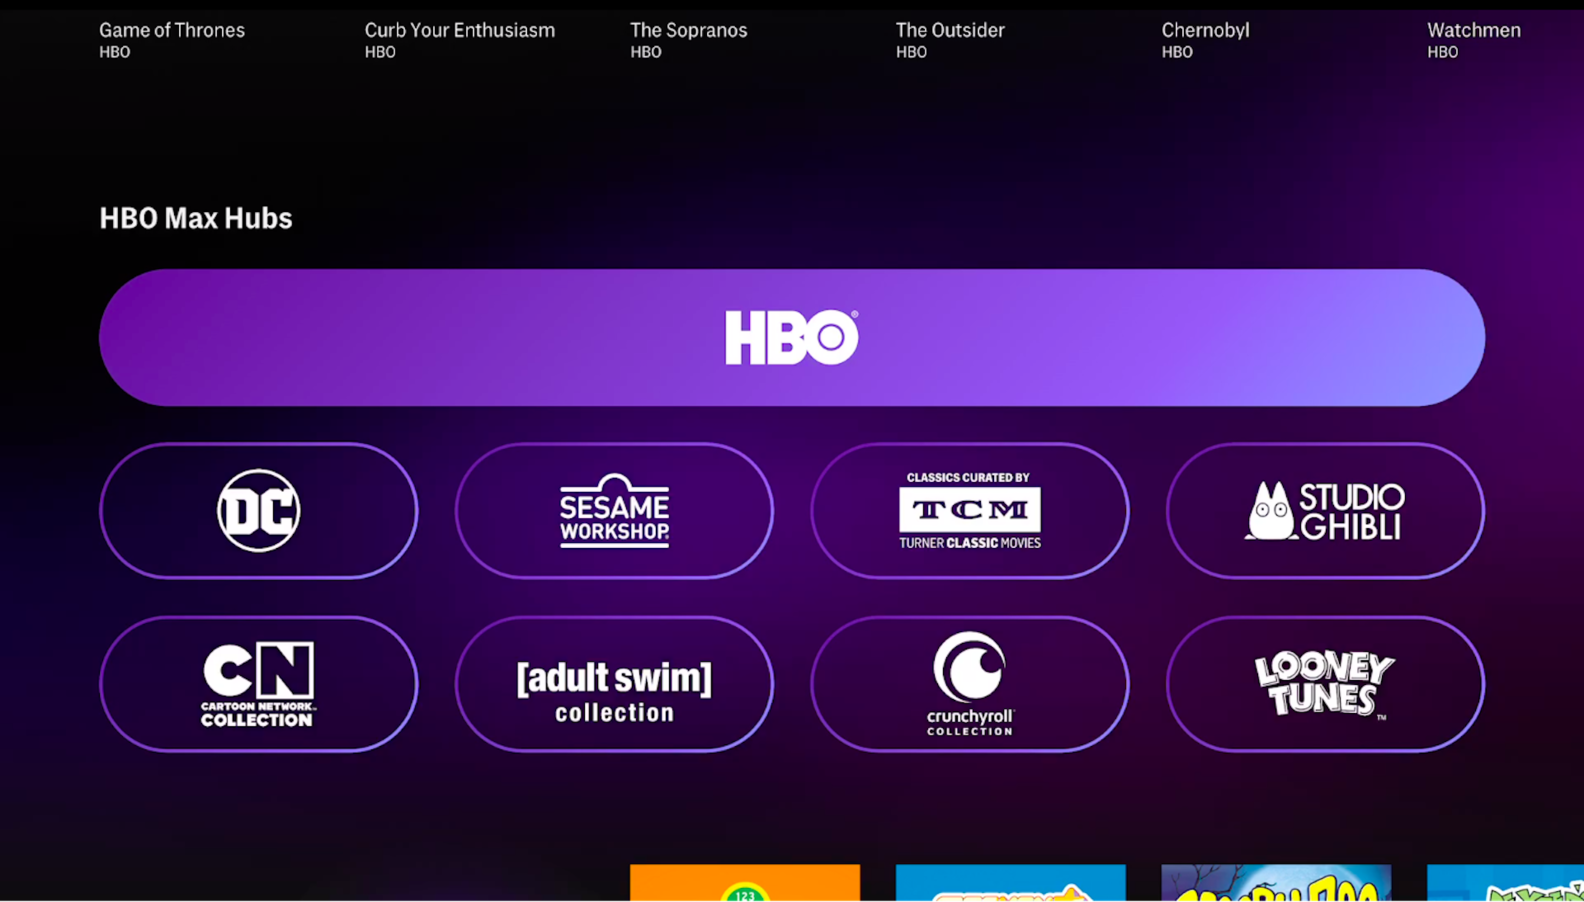 Nos EUA, o HBO Max tem mais "hubs" de conteúdo do que no Brasil (Imagem: divulgação / WarnerMedia)